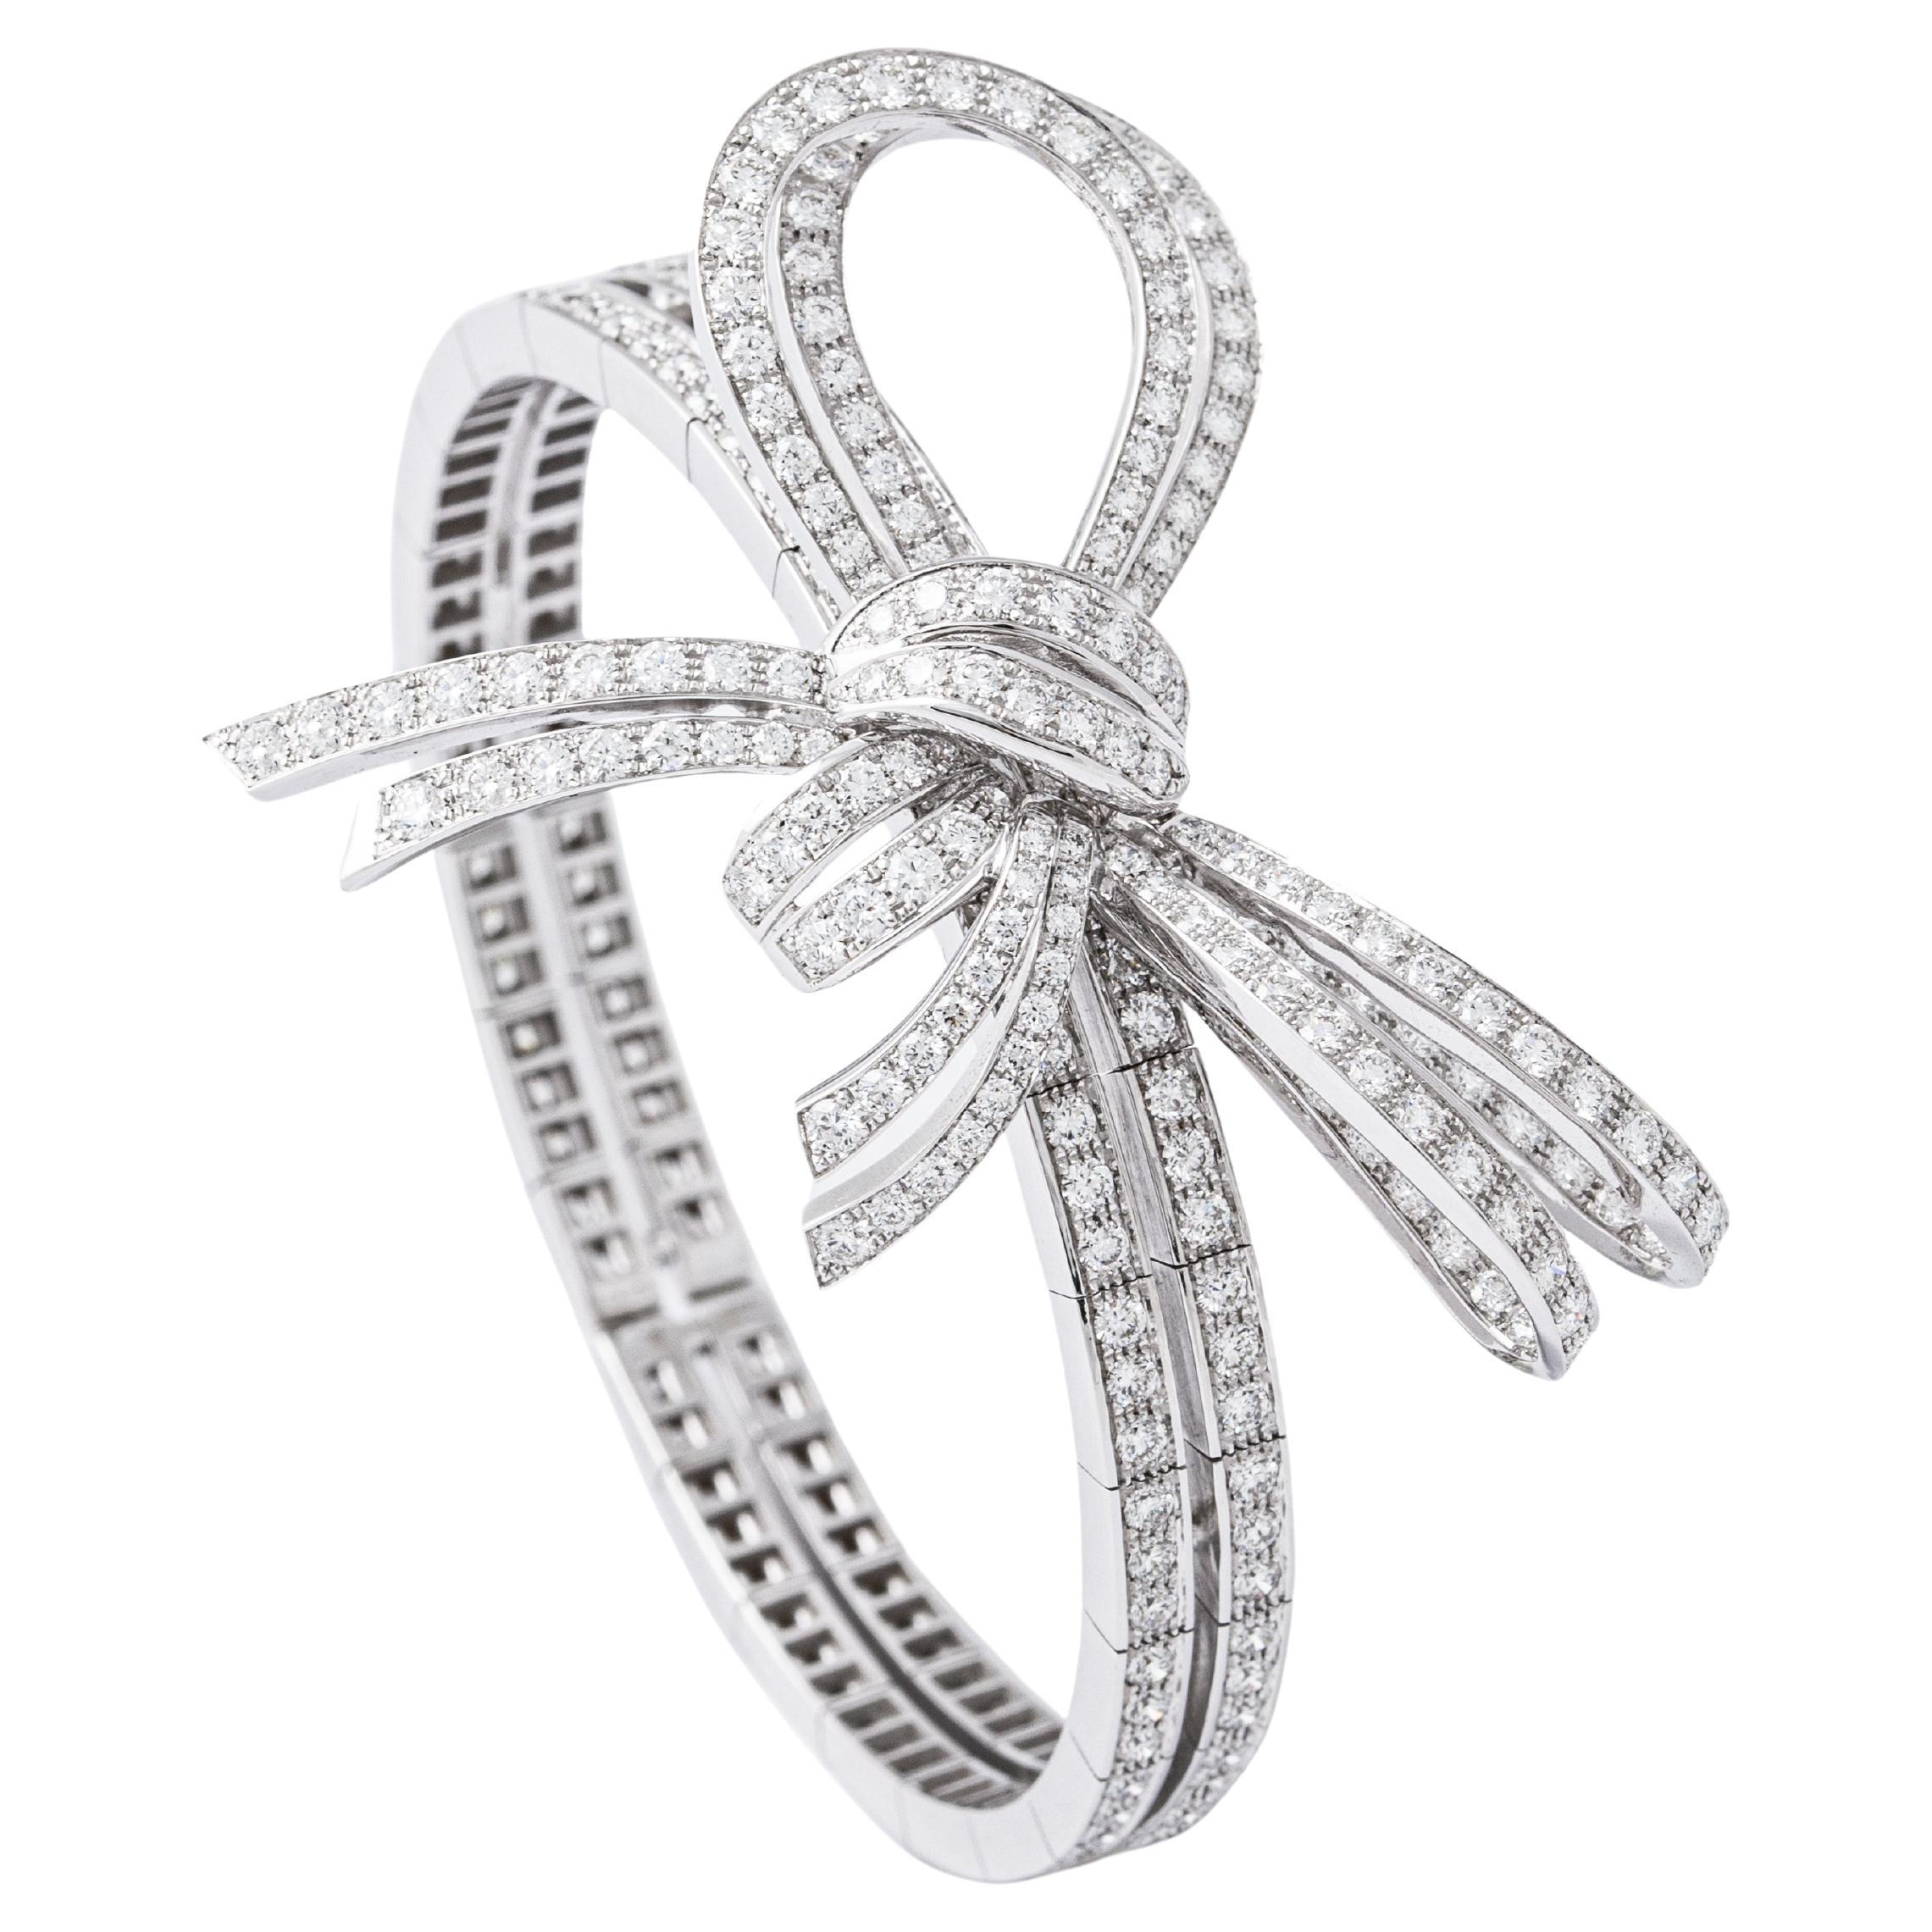 Bracelet nœud en or blanc 18K serti de 309 diamants 8.04 cts. Flexible.
Dimensions du nœud : 5,50 x 4,00 centimètres.
Taille du poignet : environ 17,50 à 19,00 centimètres.

Le bracelet est souple.
